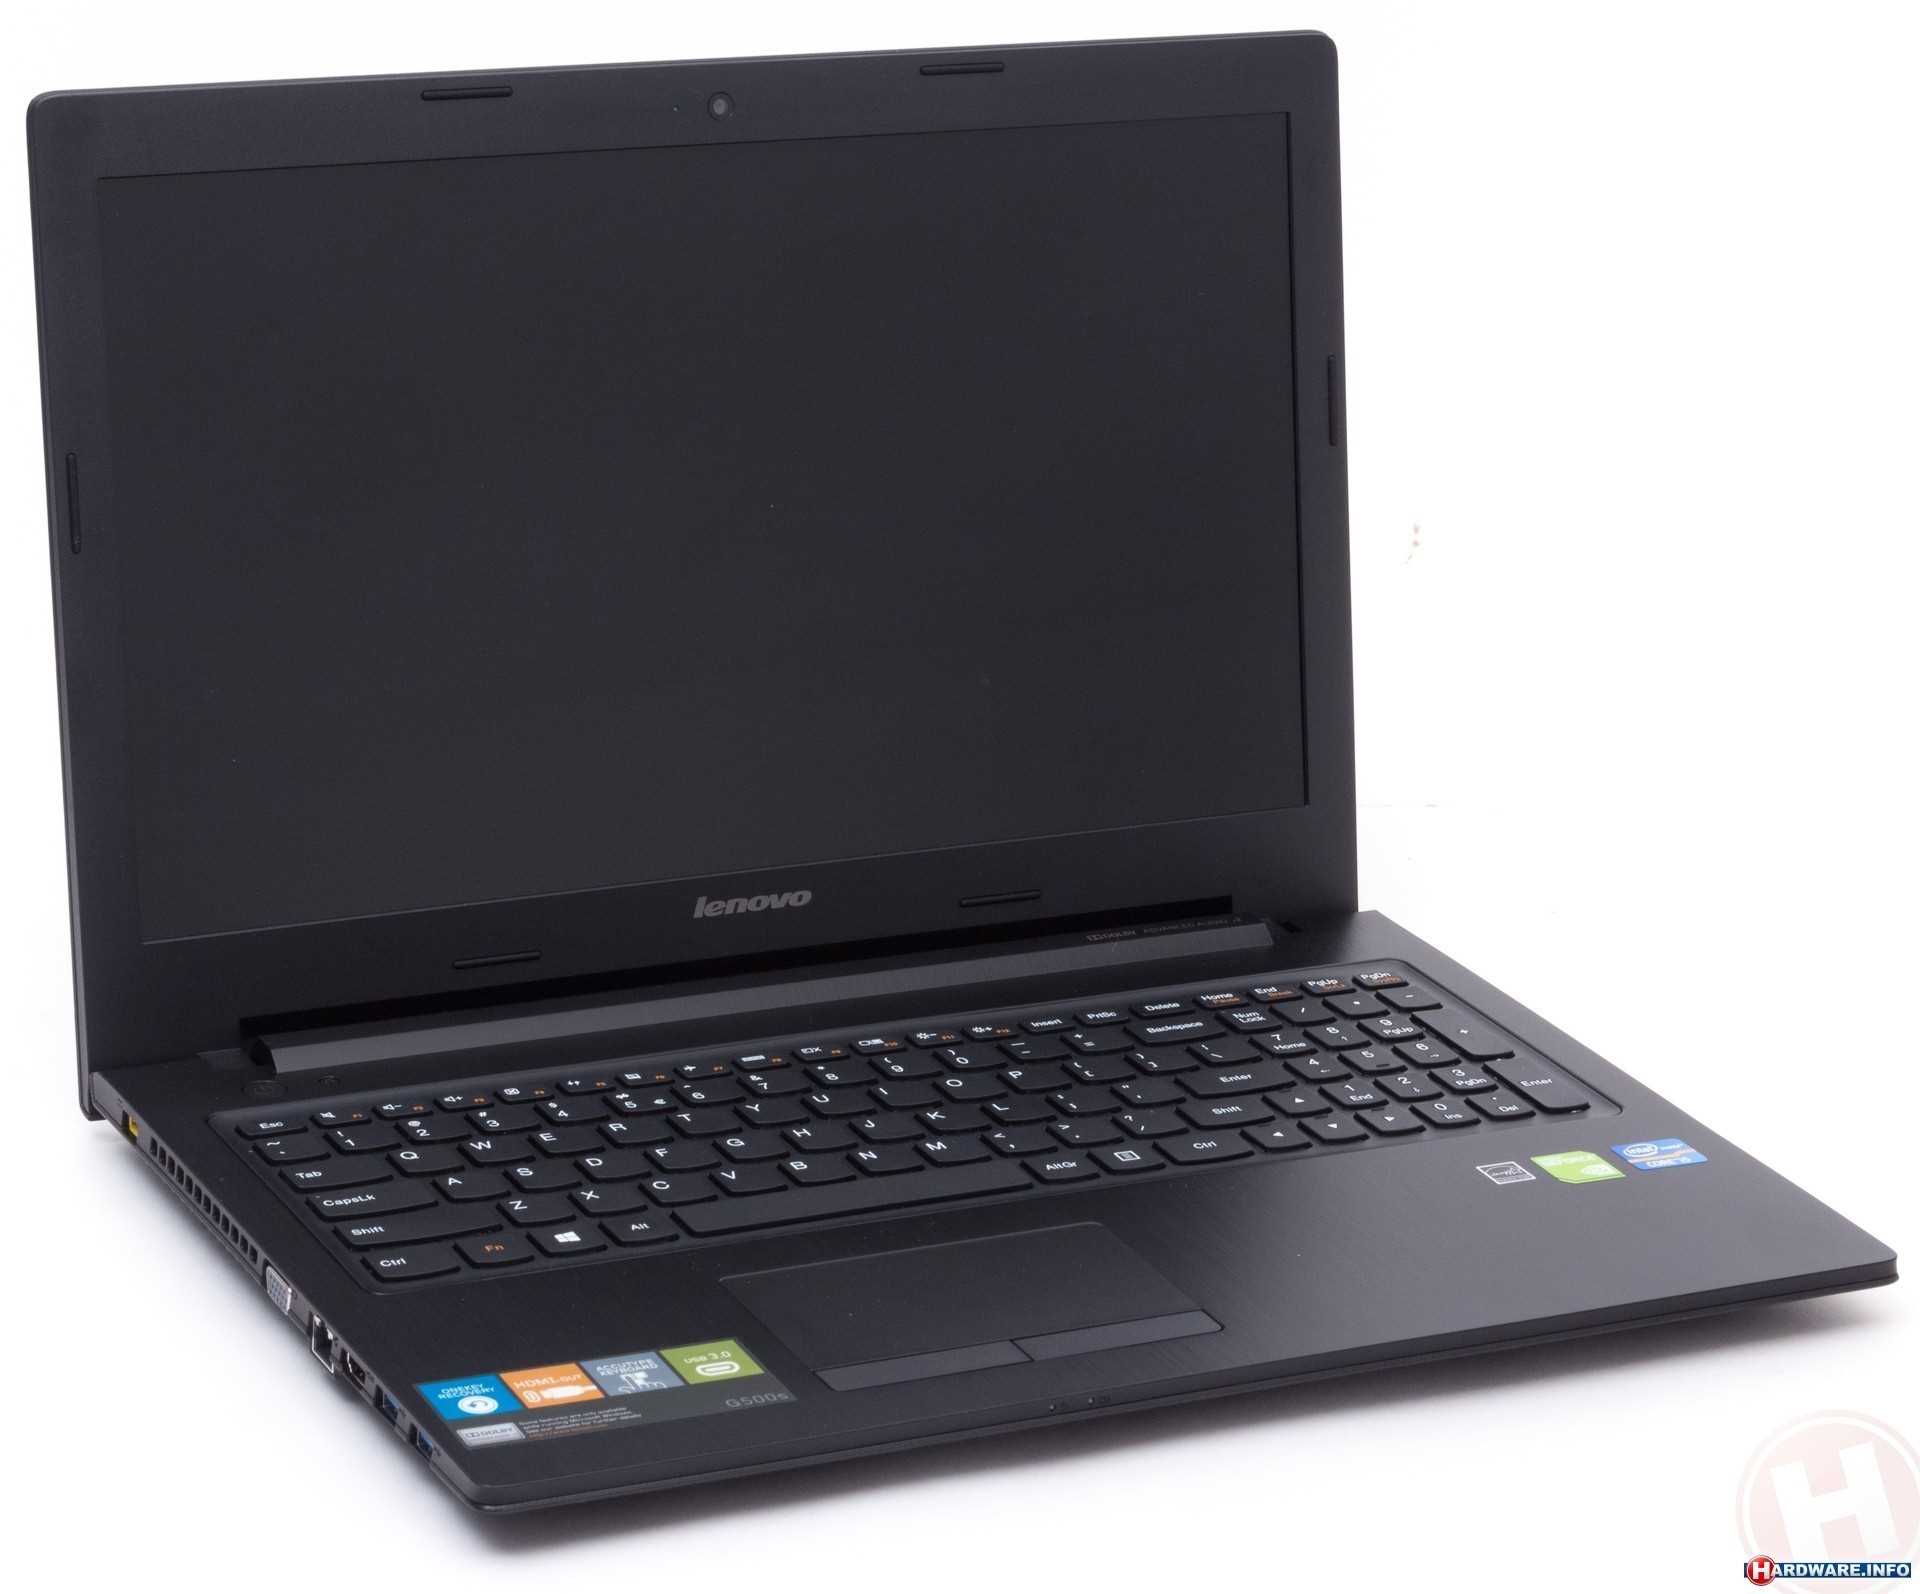 Notebook lenovo G500 i5 processor, Nor